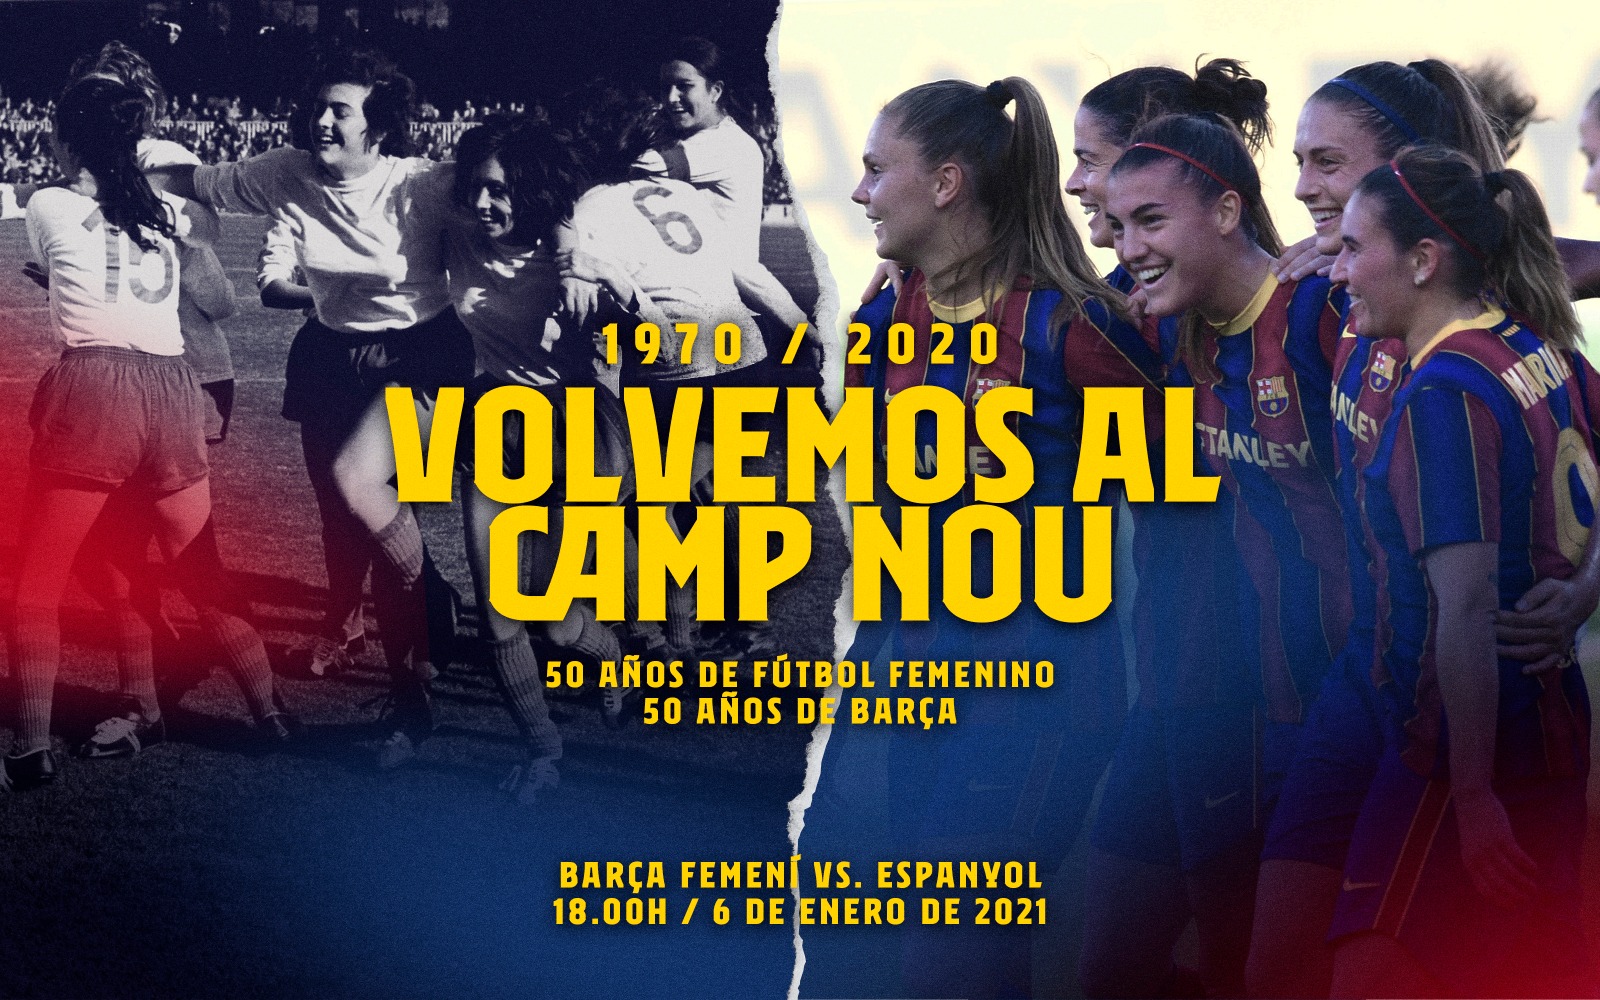 El Barça Femení regresa al Camp Nou 50 años después del primer partido  disputado por las pioneras en el Estadio